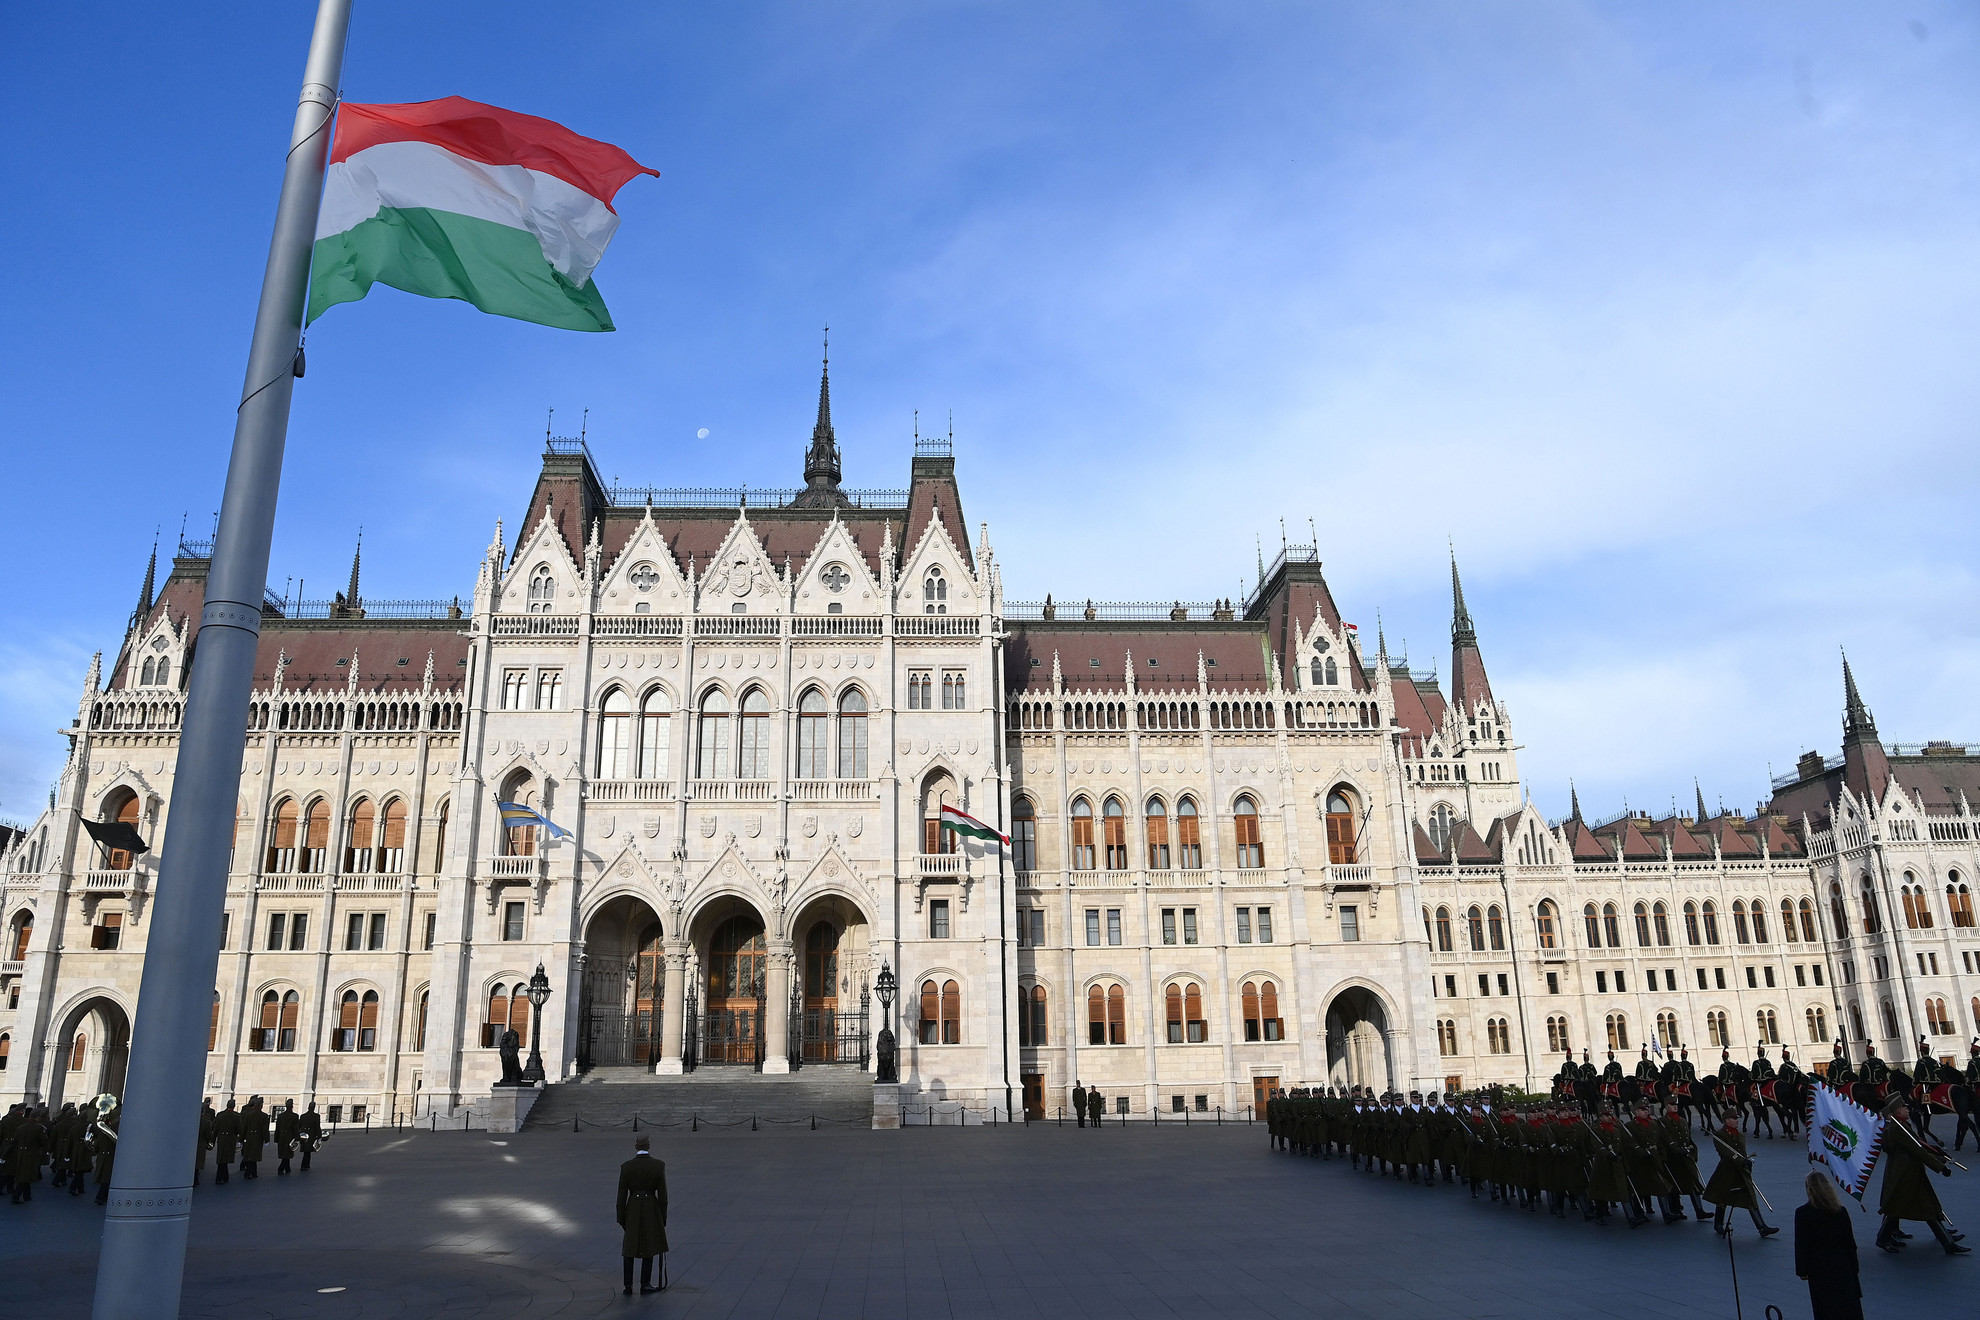 A kegyelet kifejezéseként Magyarország lobogója egész nap félárbócon marad a nemzeti gyásznapon